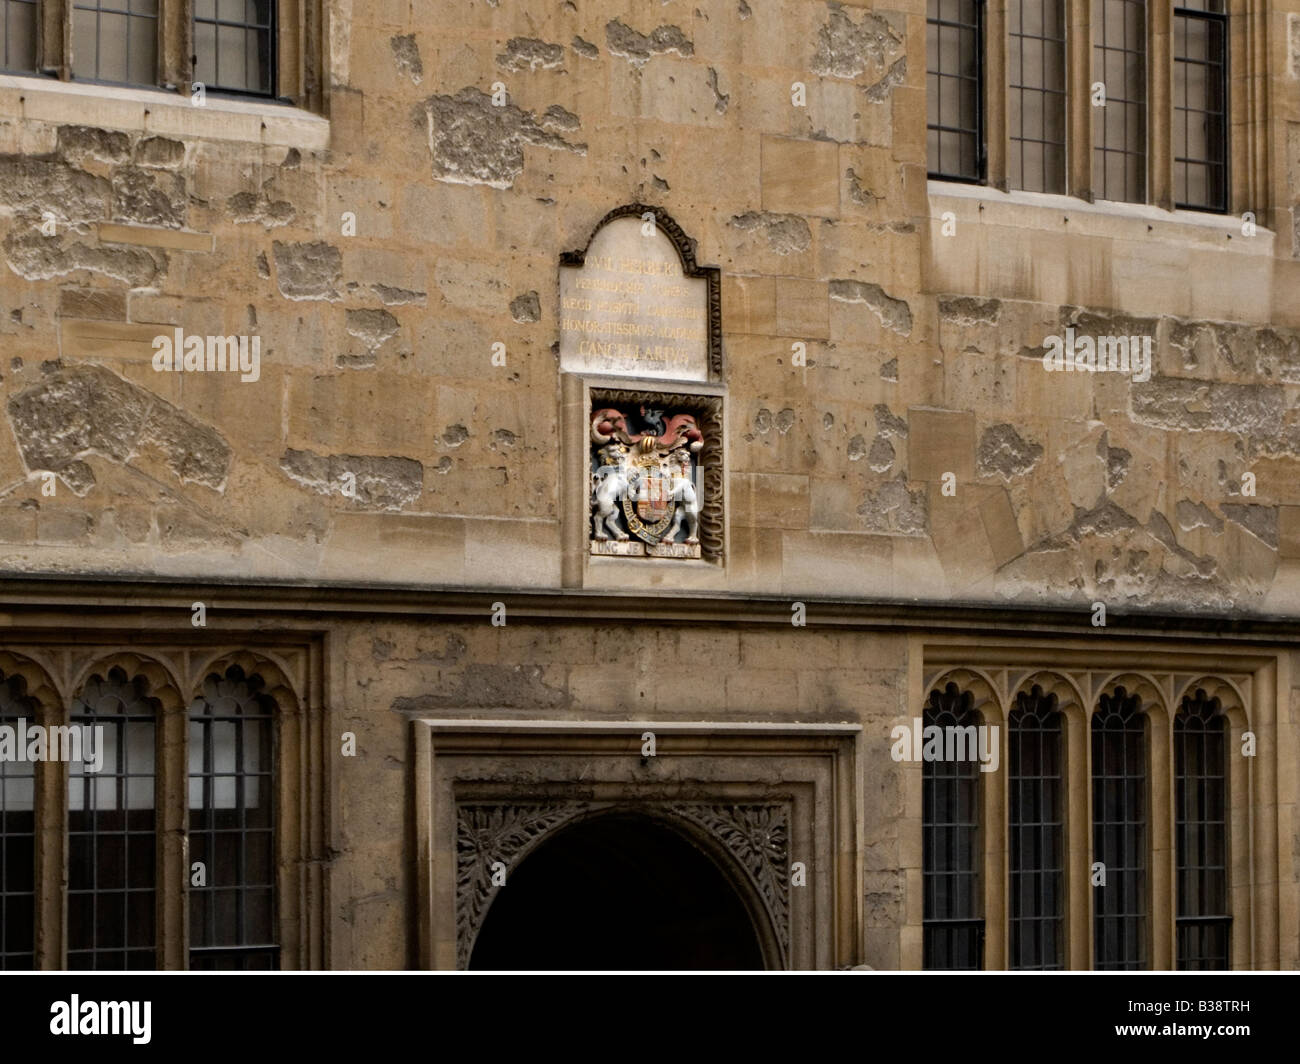 Dettaglio della biblioteca Bodleian Library con stemma, Broad Street, Oxford, Oxfordshire, England, Regno Unito Foto Stock